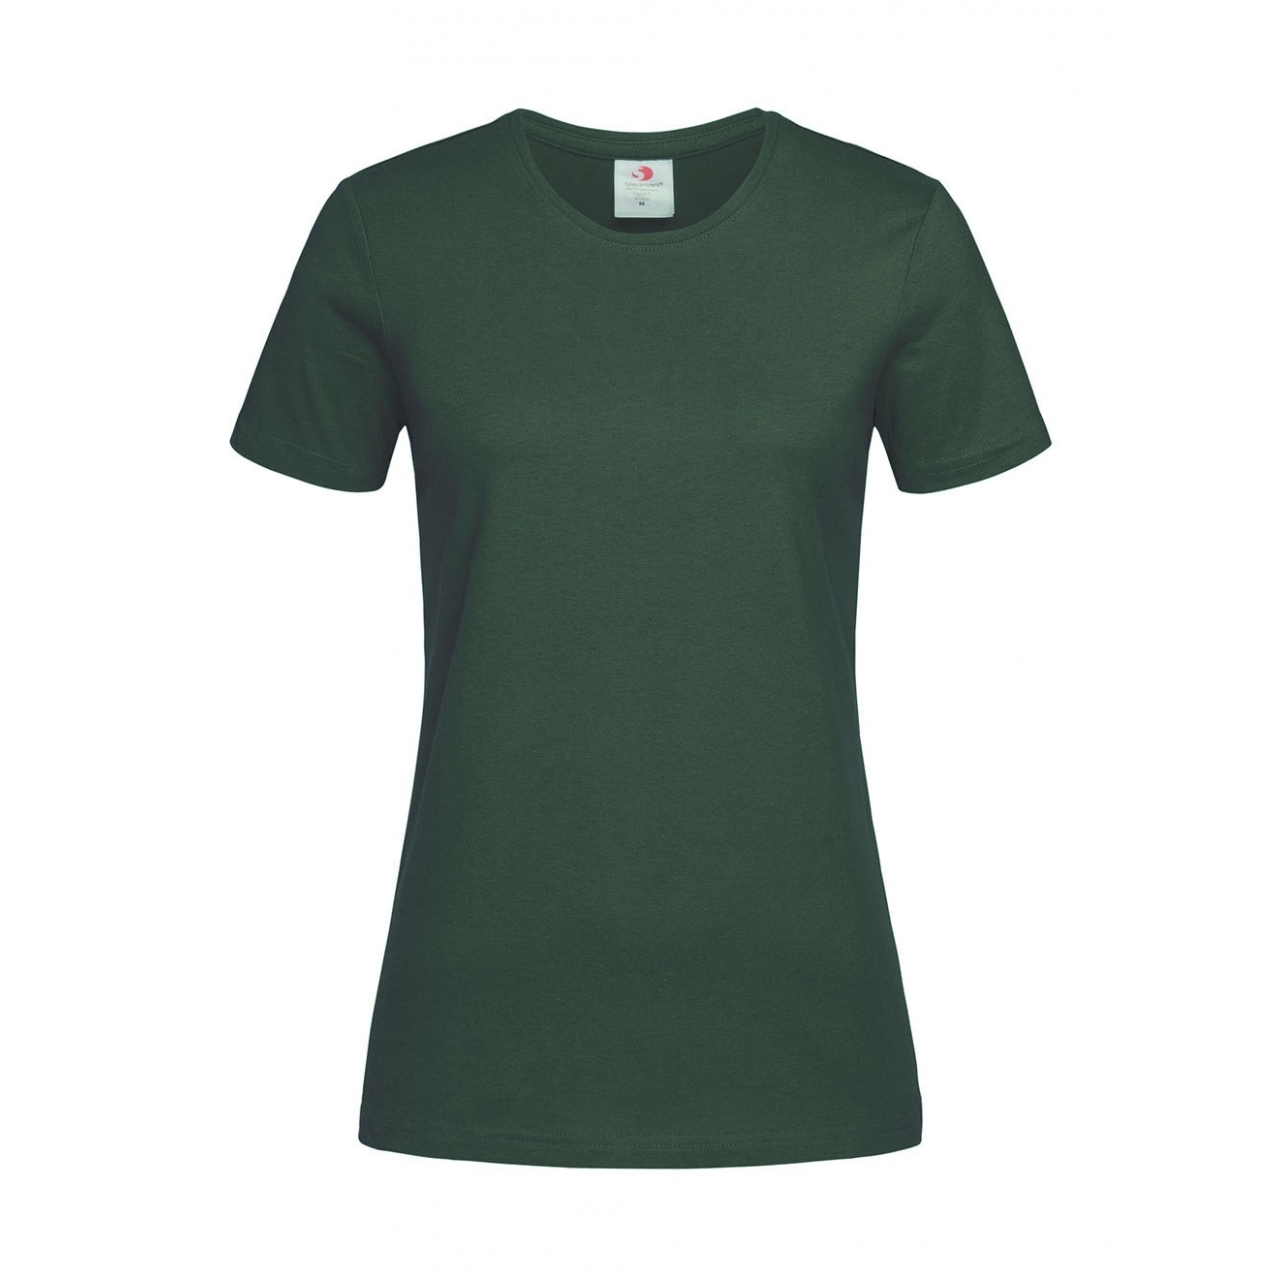 Tričko dámské Stedman Fitted s kulatým výstřihem - tmavě zelené, XS